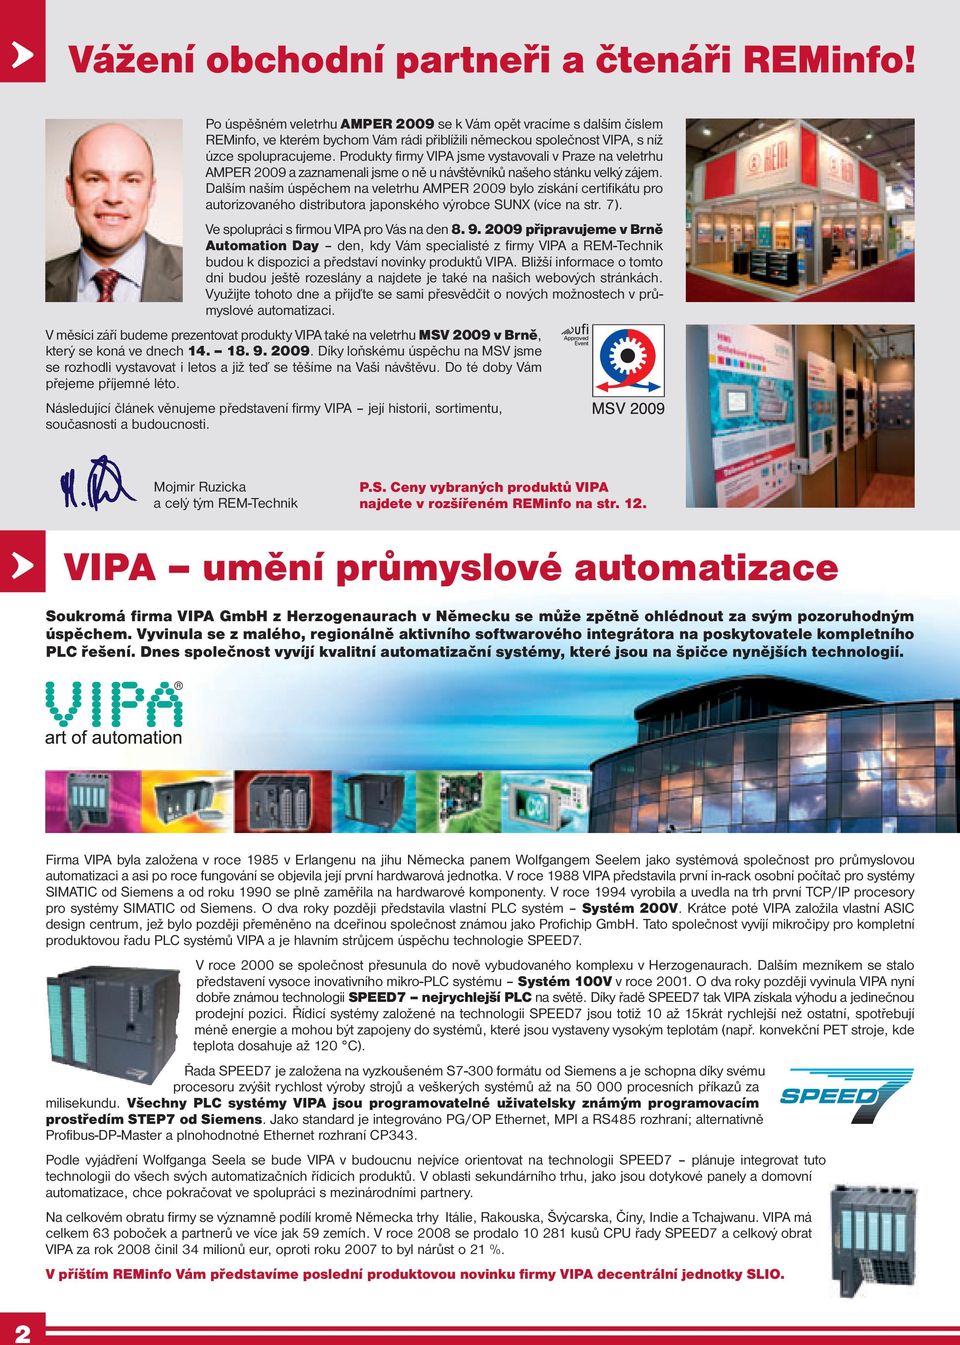 Produkty firmy VIPA jsme vystavovali v Praze na veletrhu AMPER 2009 a zaznamenali jsme o ně u návštěvníků našeho stánku velký zájem.